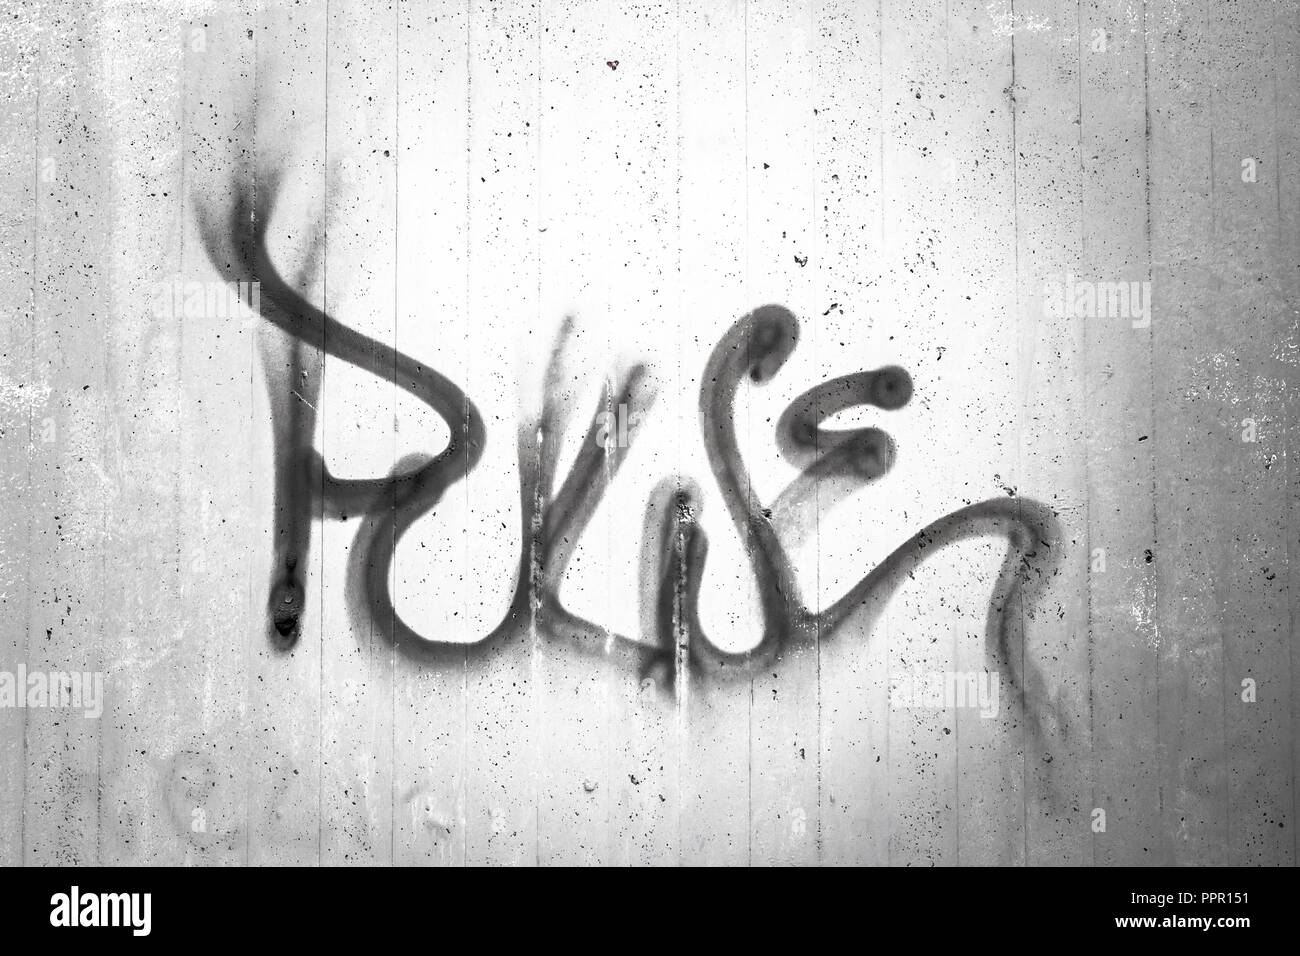 Beton wand Textur mit Graffiti. Wort "Impuls" auf einem grauen rauhe Wand geschrieben. Jugend Kommunikation. Ideal für Konzepte und Hintergründe. Stockfoto